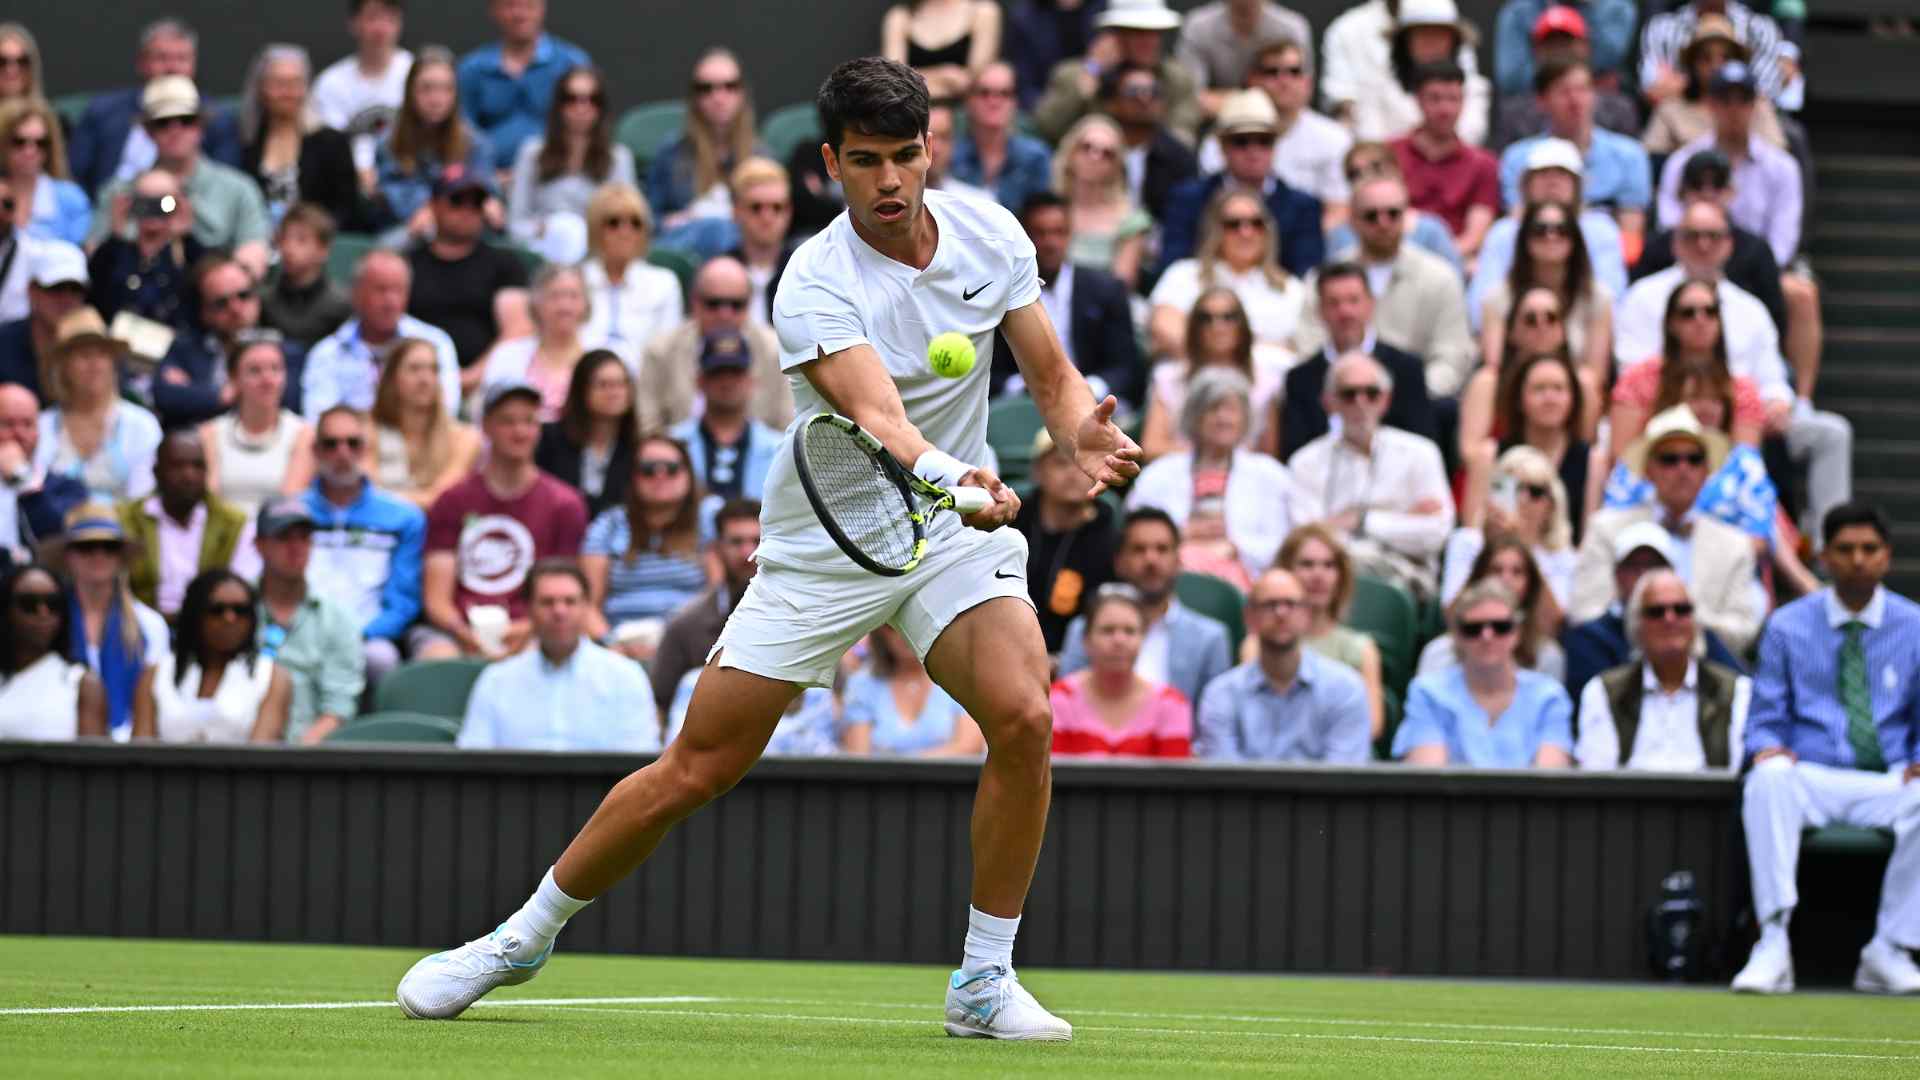 La ‘revancha’ que persigue Alcaraz en Wimbledon